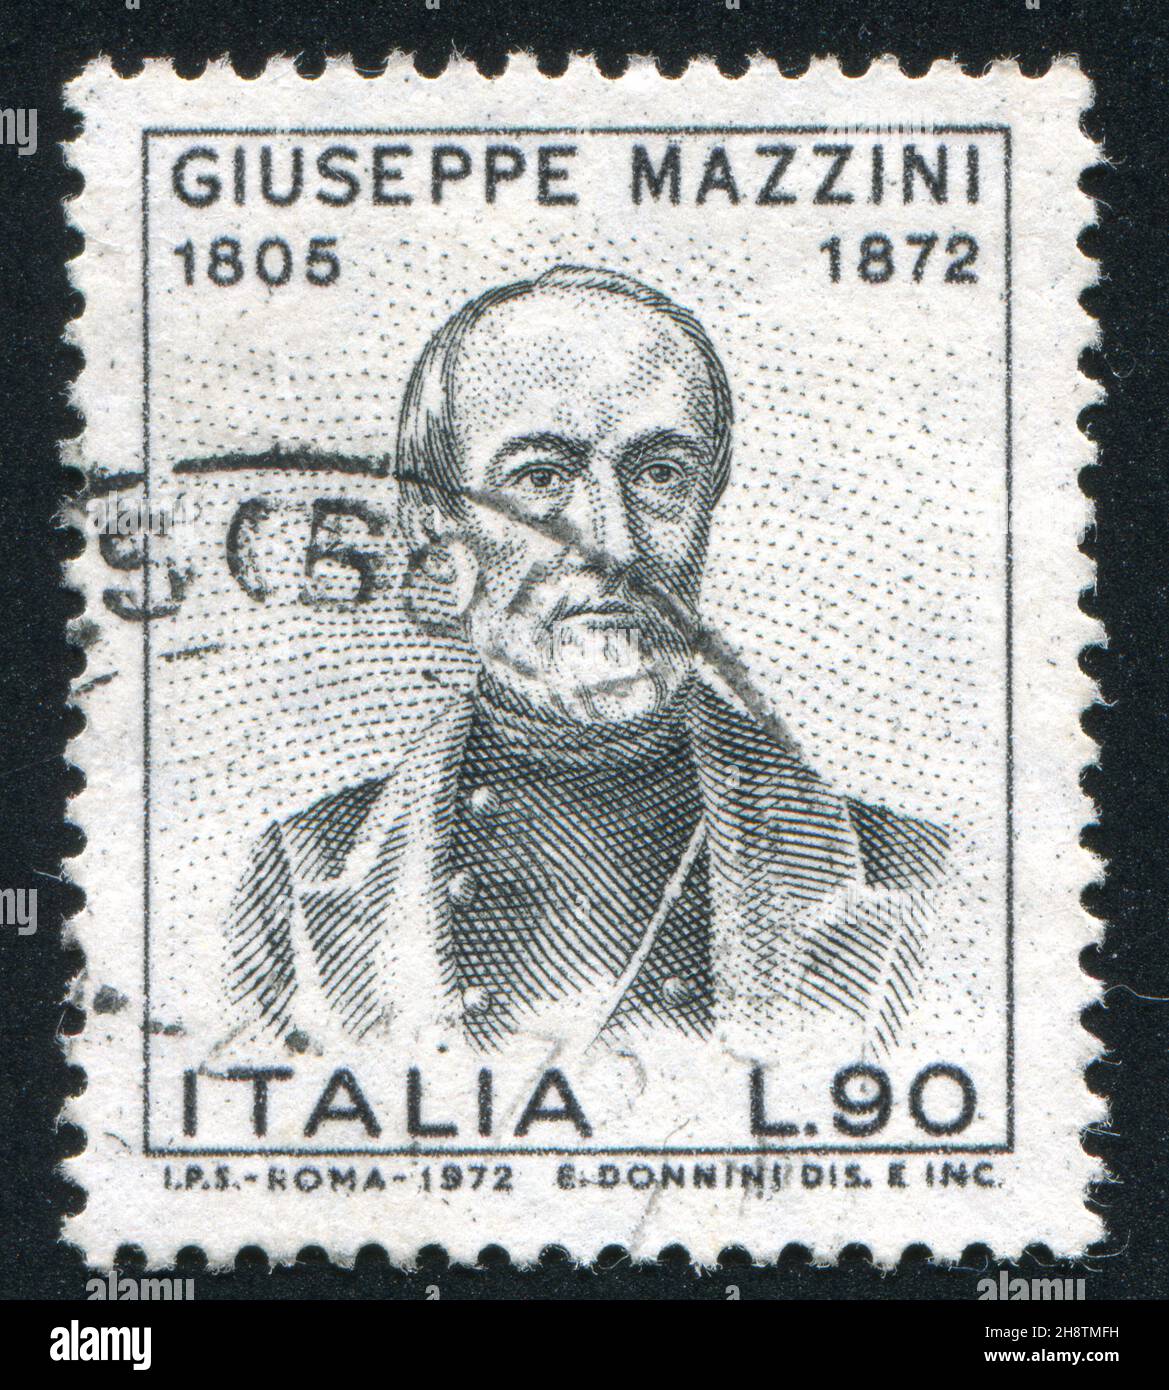 ITALIEN - UM 1972: Briefmarke gedruckt von Italien, zeigt Giuseppe Mazzini (1805-1872), Patriot und Schriftsteller, um 1972 Stockfoto